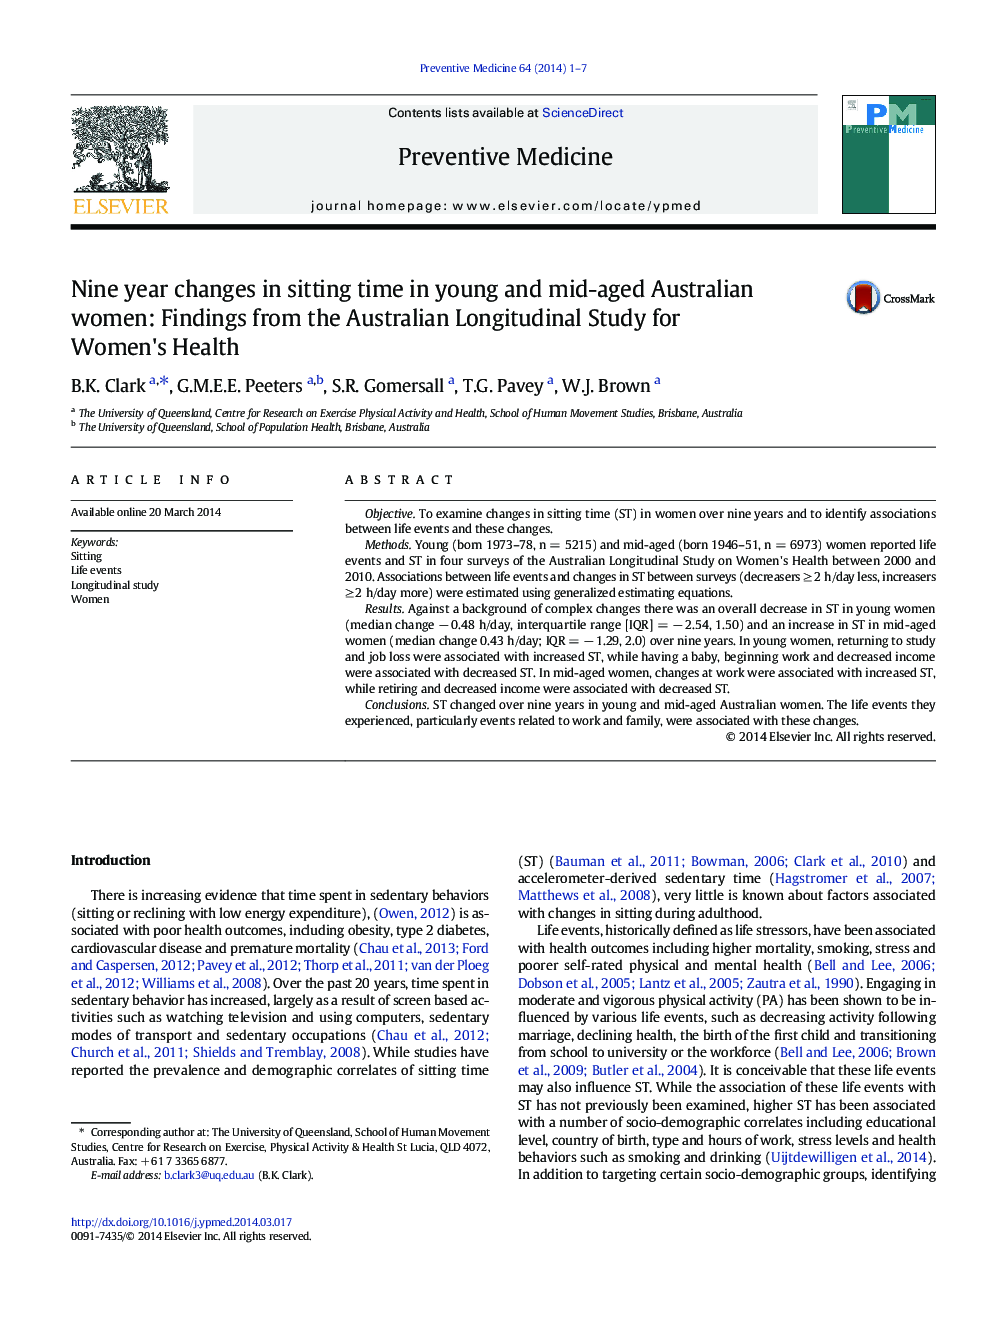 تغییرات نه ساله در زمان نشستن در زنان جوان و جوان میانسالی استرالیا: یافته های مطالعات طولی استرالیا برای سلامت زنان 